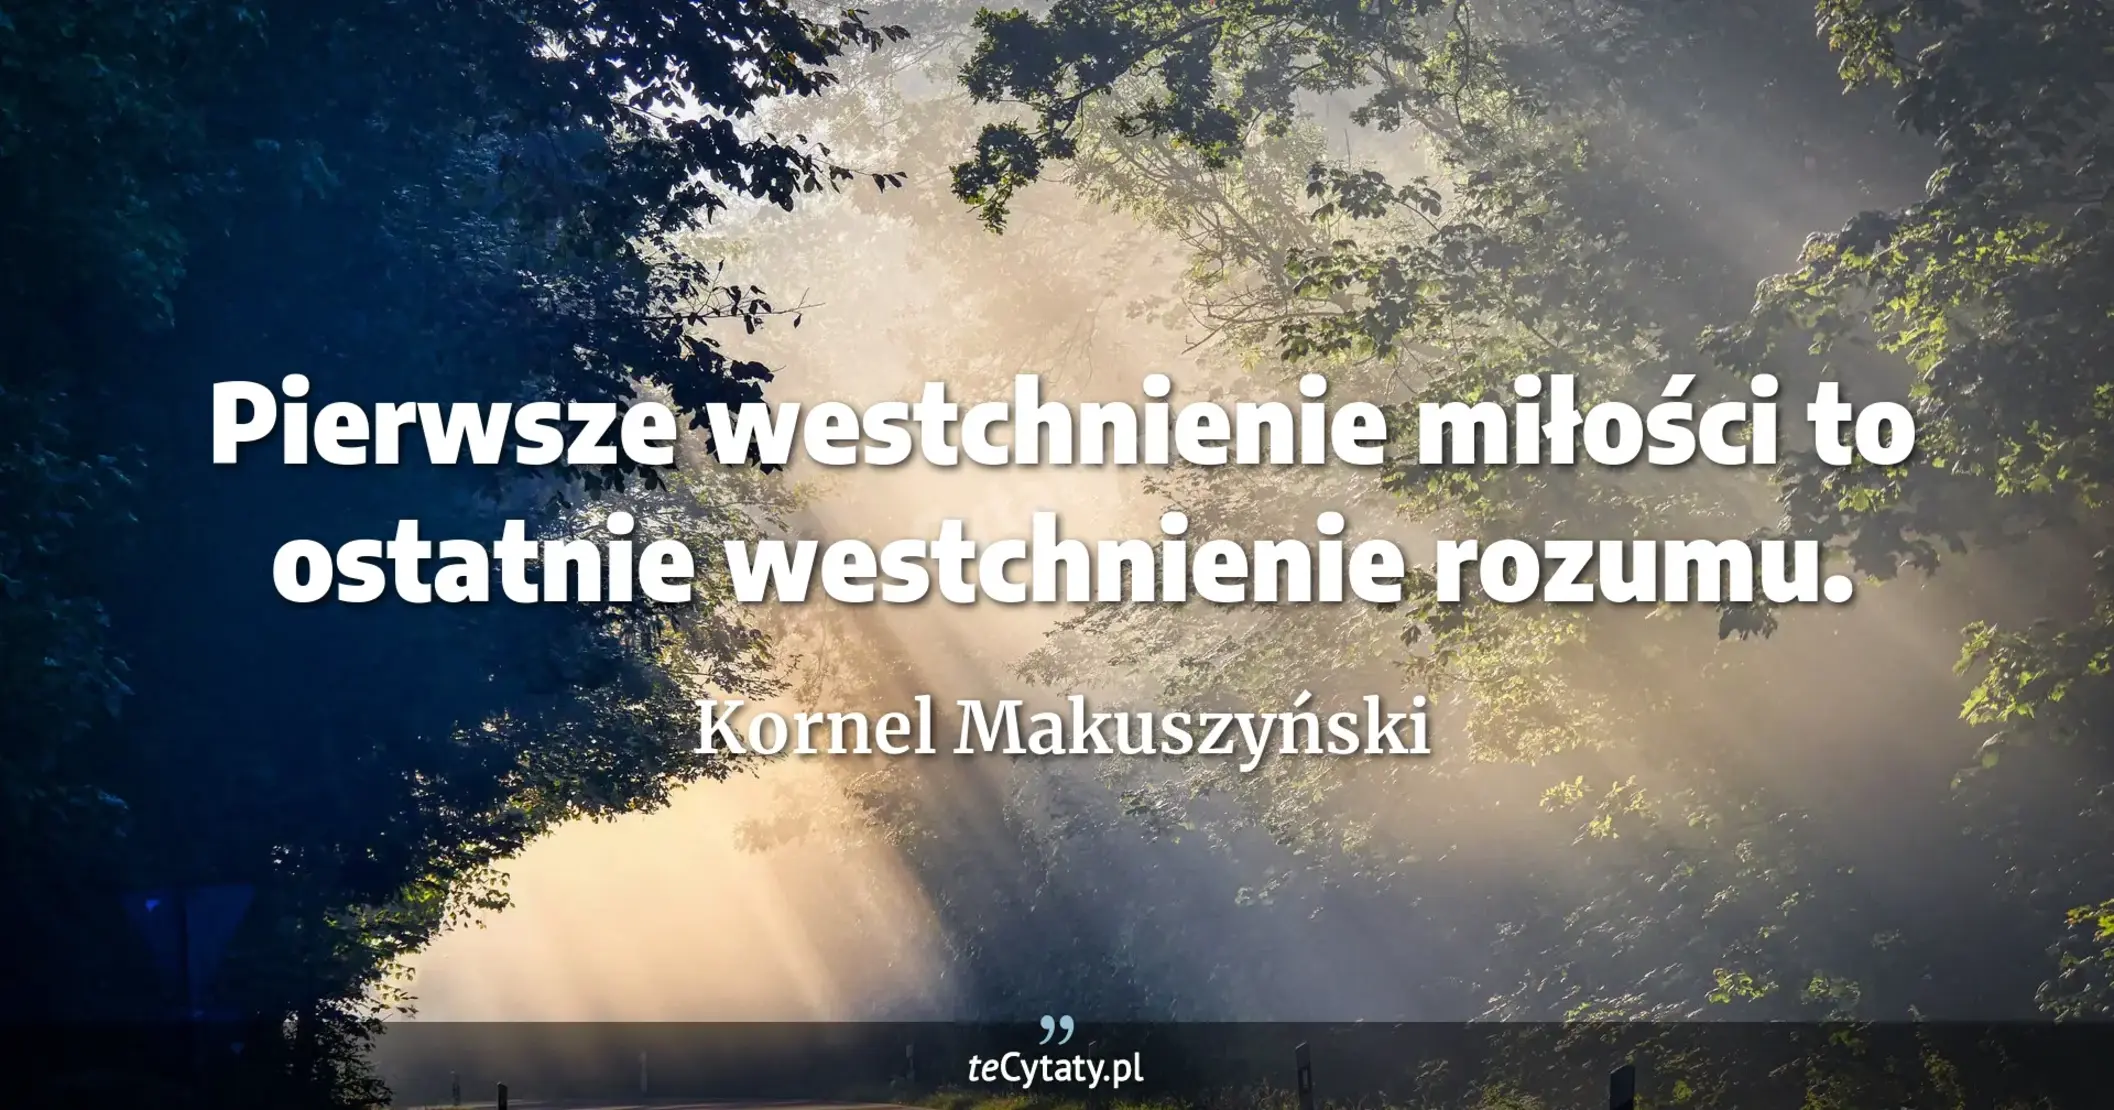 Pierwsze westchnienie miłości to ostatnie westchnienie rozumu. - Kornel Makuszyński